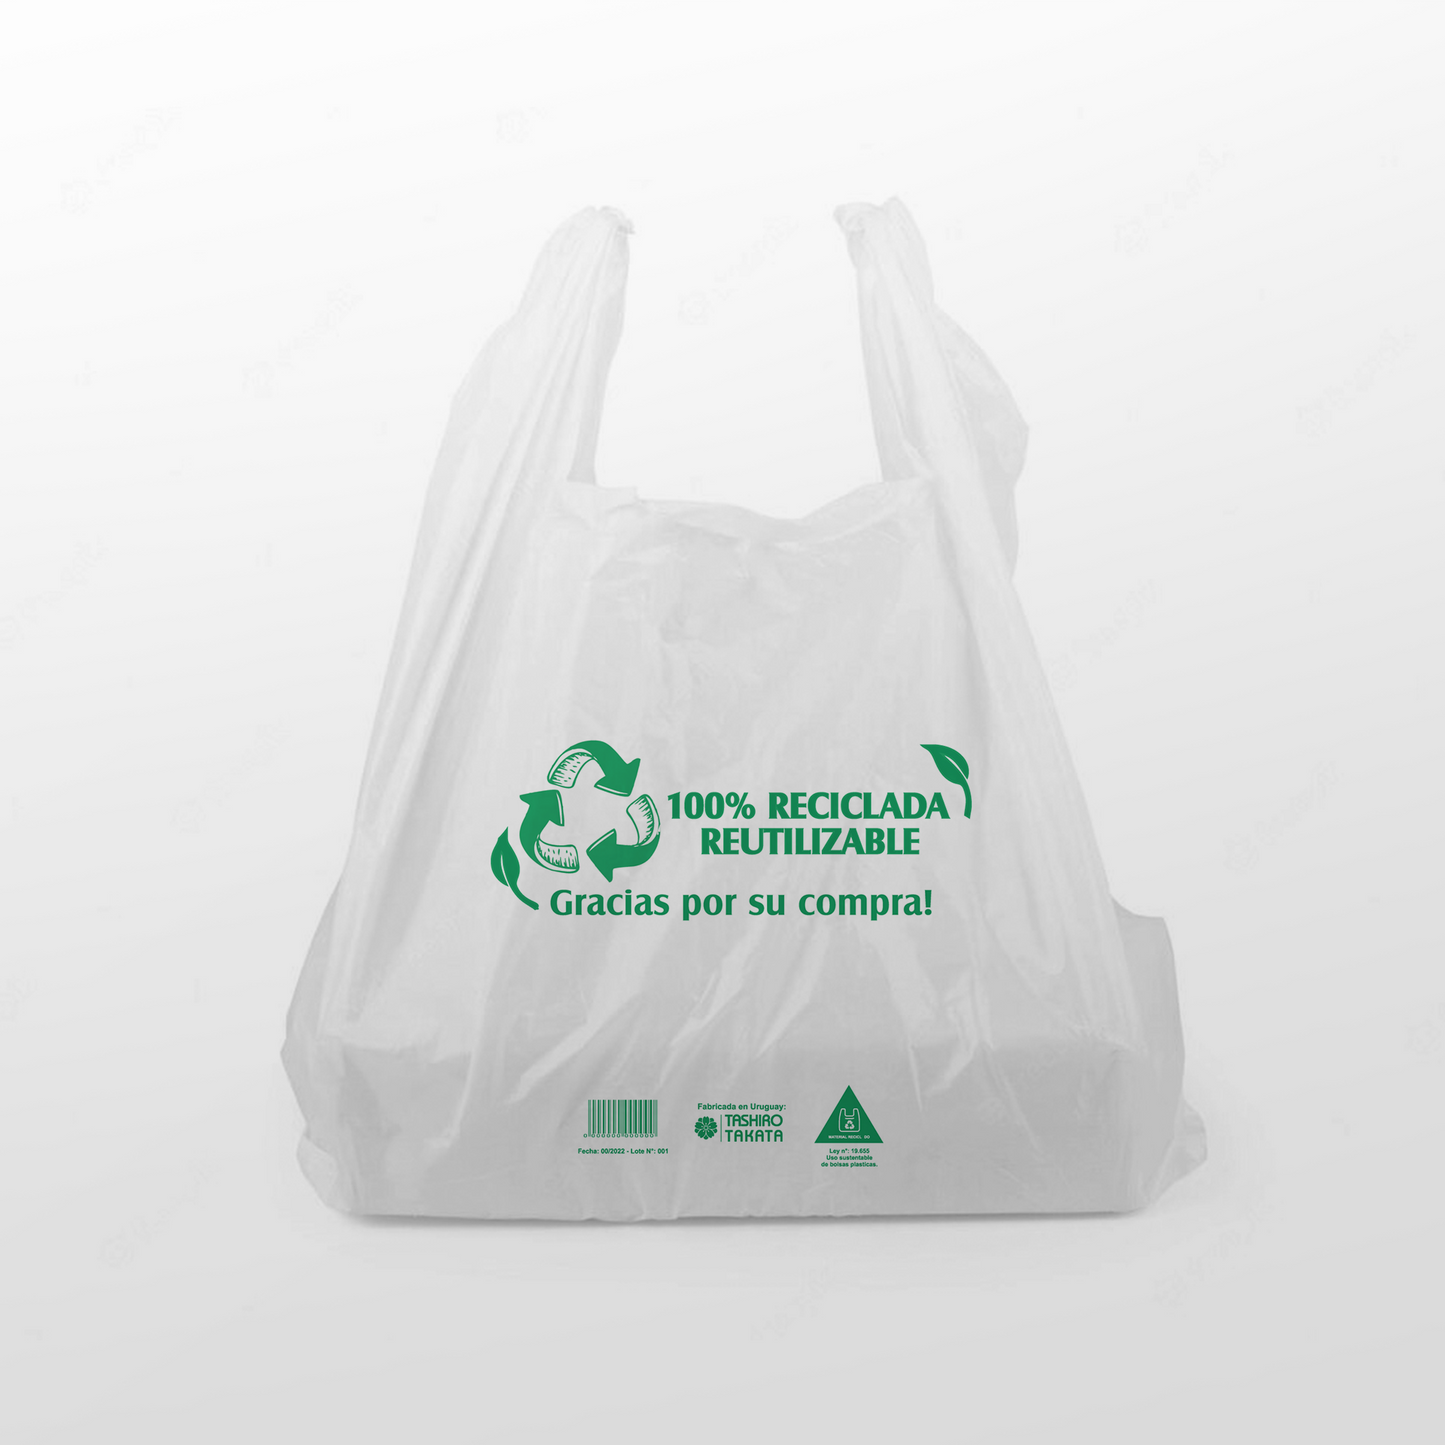 Bolsas Tipo Camiseta Recicladas Aprobadas por Ley - Paquete de 1.000 Unid